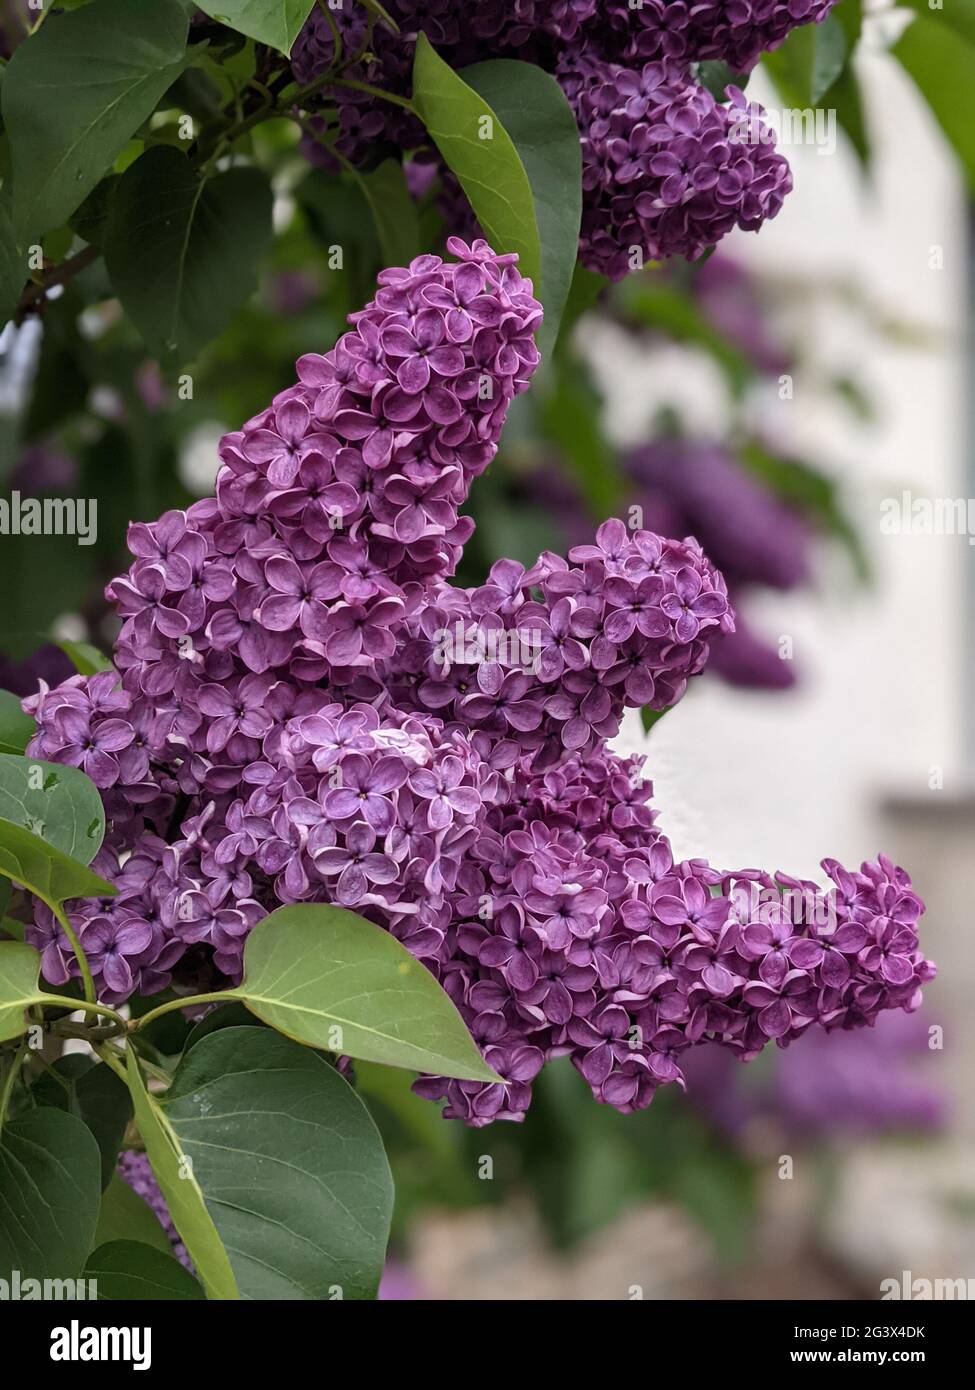 Close-up view of lilac flowers. Nahansicht eines Fliederzweiges. Stock Photo